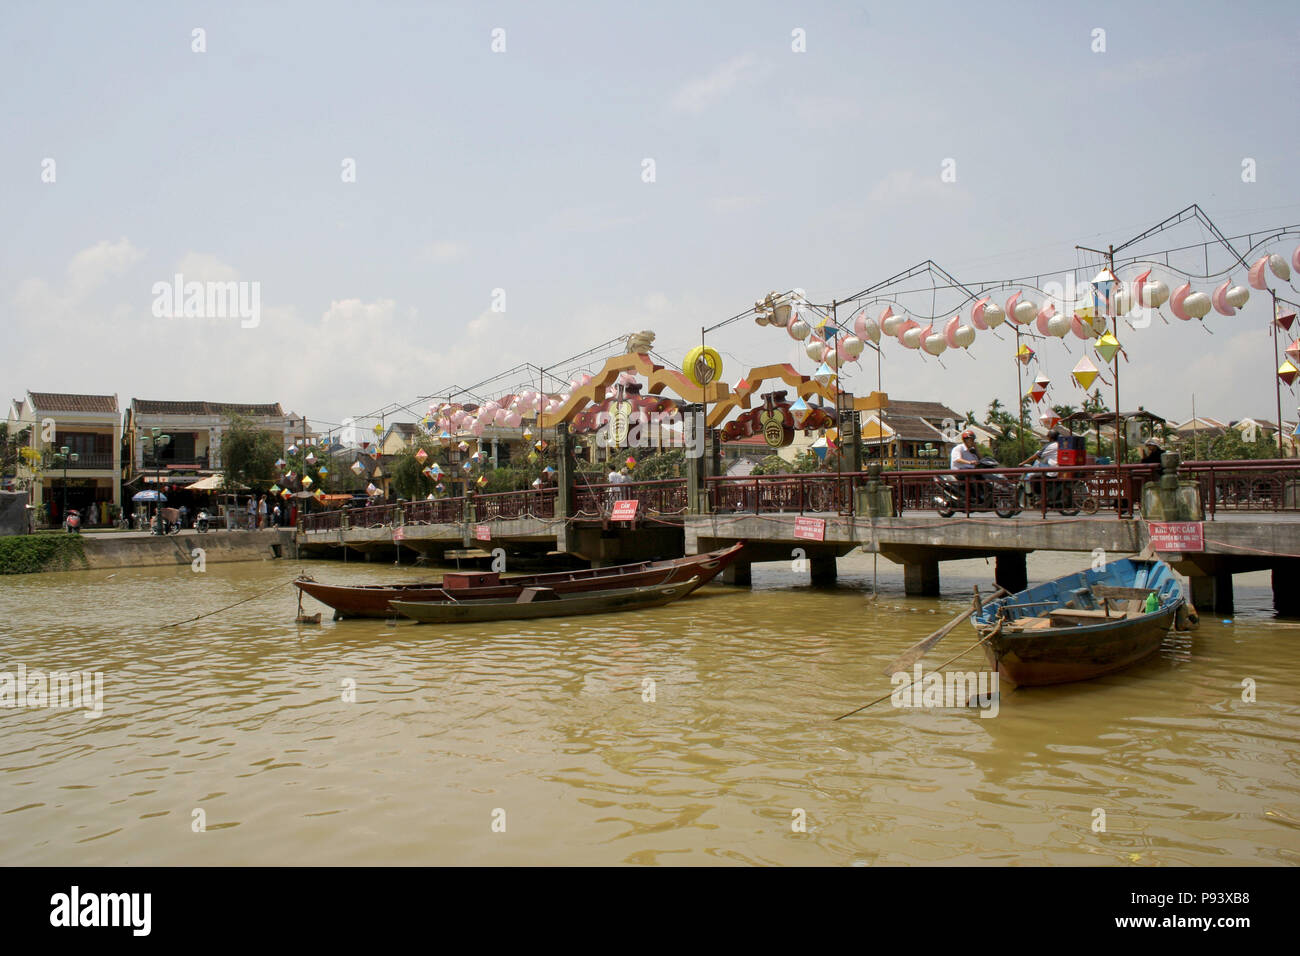 Barche in legno sul fiume, con lanterne di carta sul ponte, Hoi An, Vietnam Foto Stock